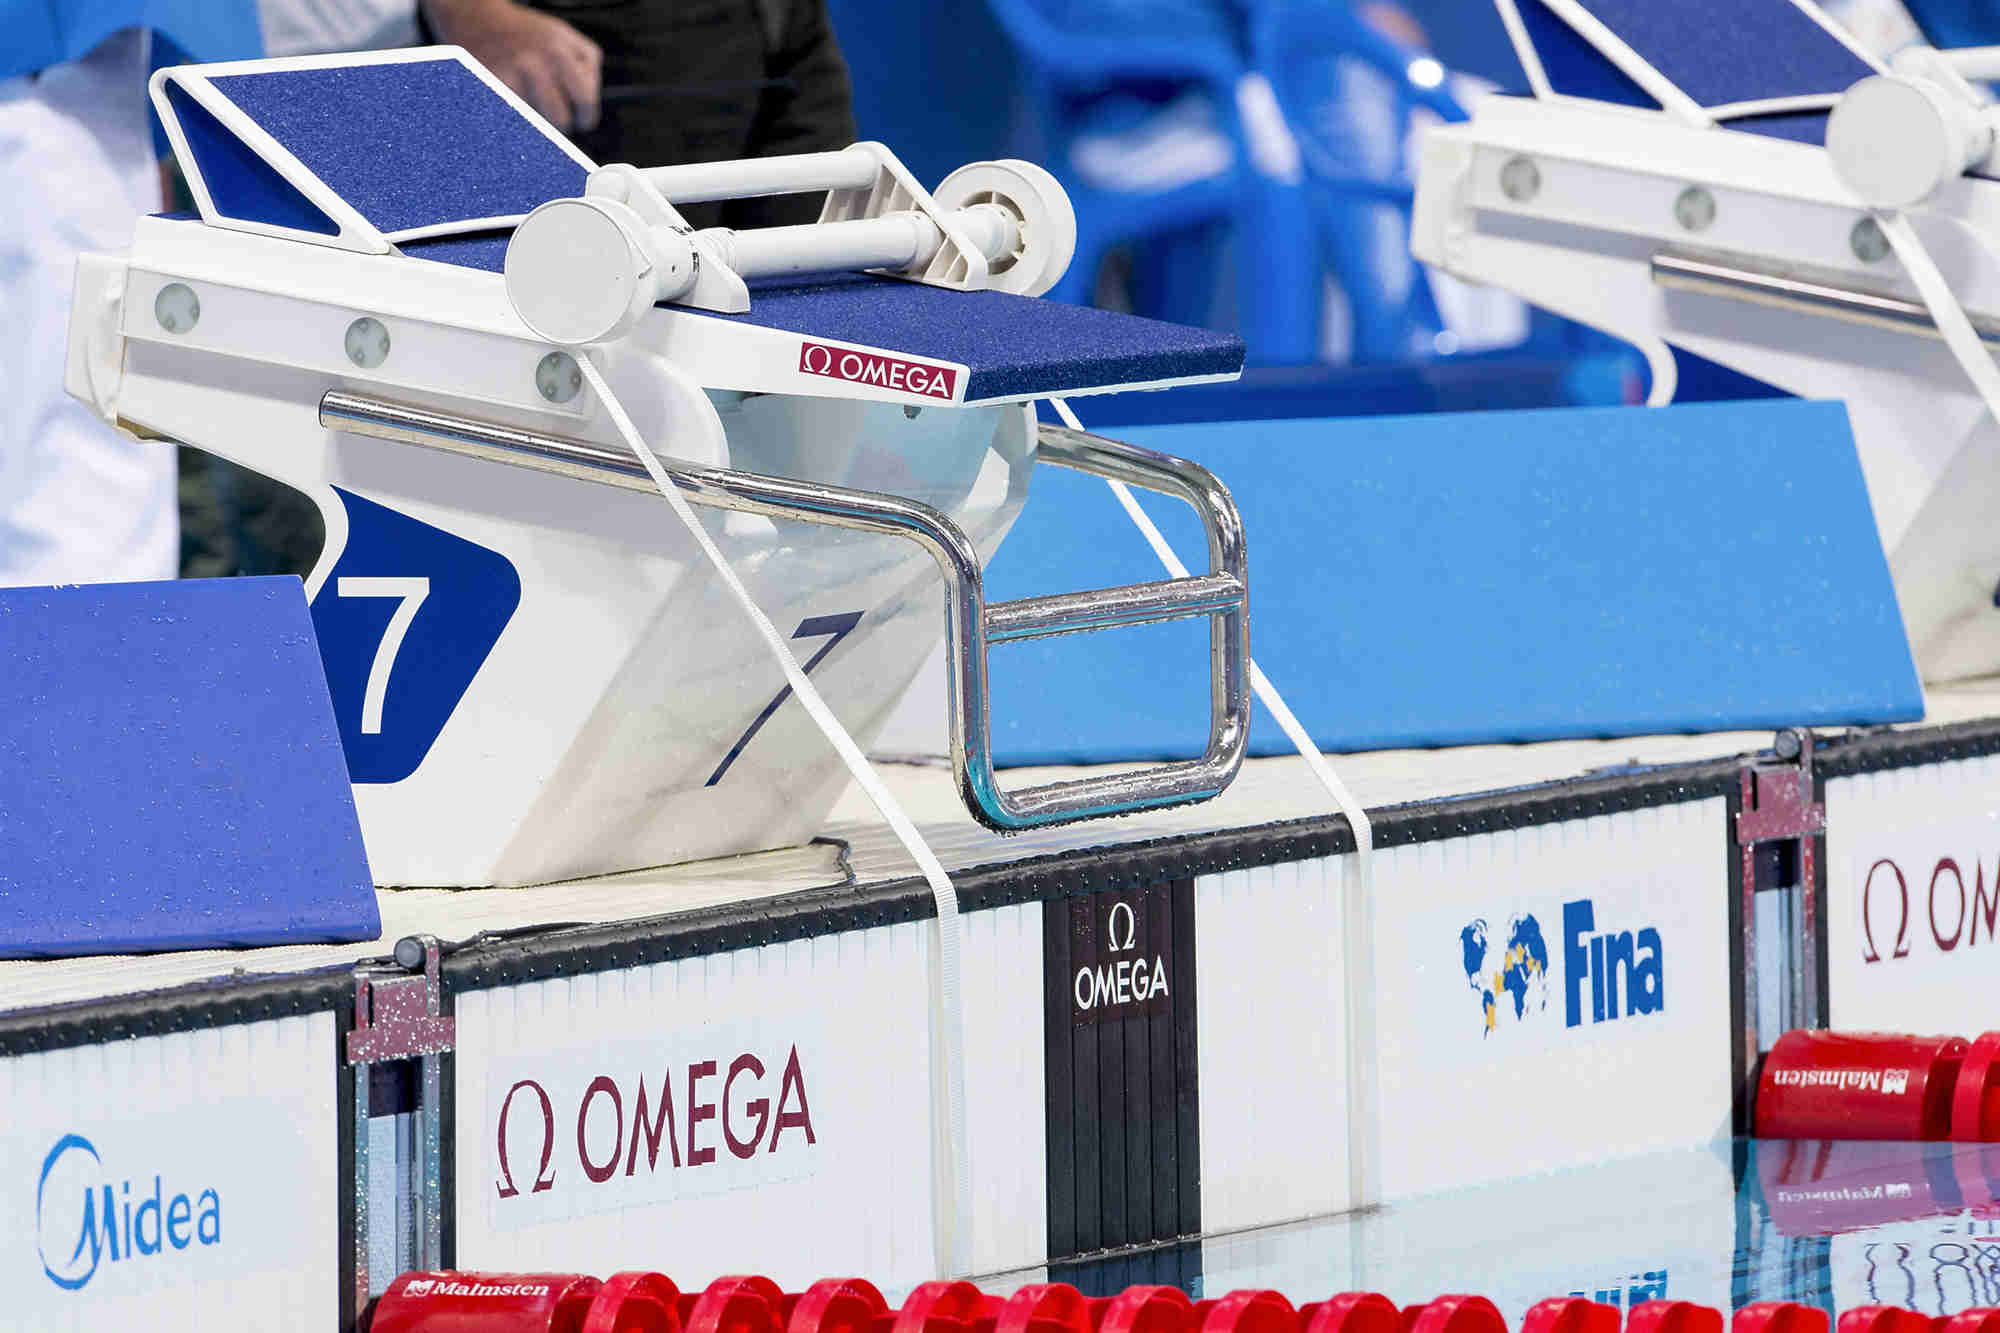 决胜泳池的千万分之一秒—欧米茄为2018年第14届国际泳联世界游泳锦标赛 (25米) 精准计时